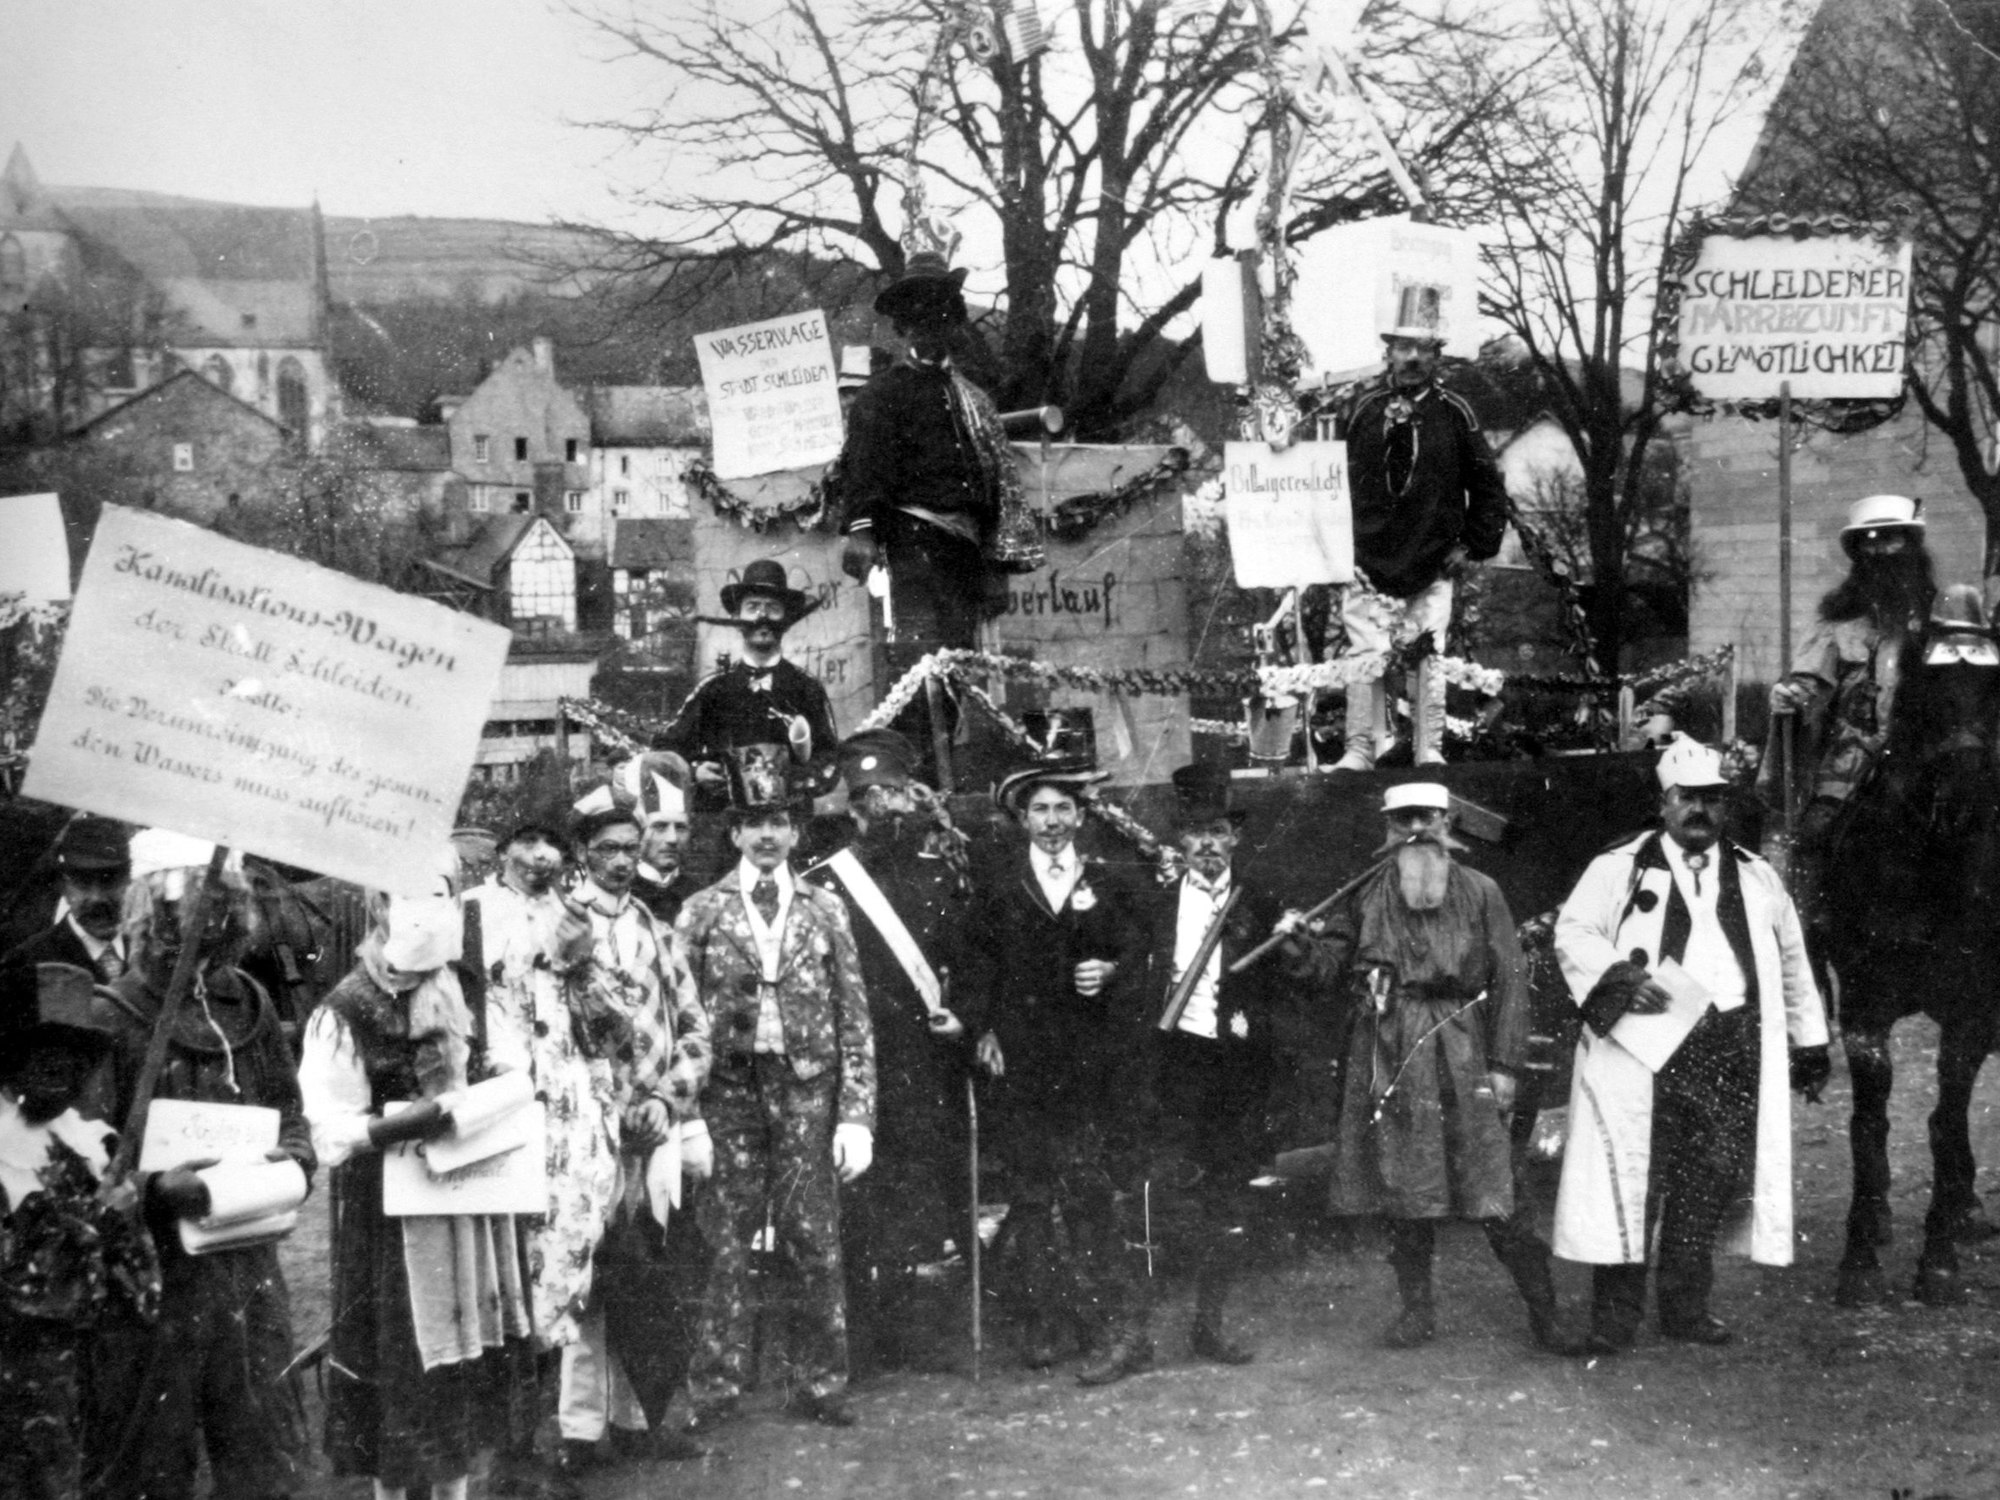 In Schleiden zog im Jahr 1911 diese Gruppe durch die Straßen und feierte Karneval.